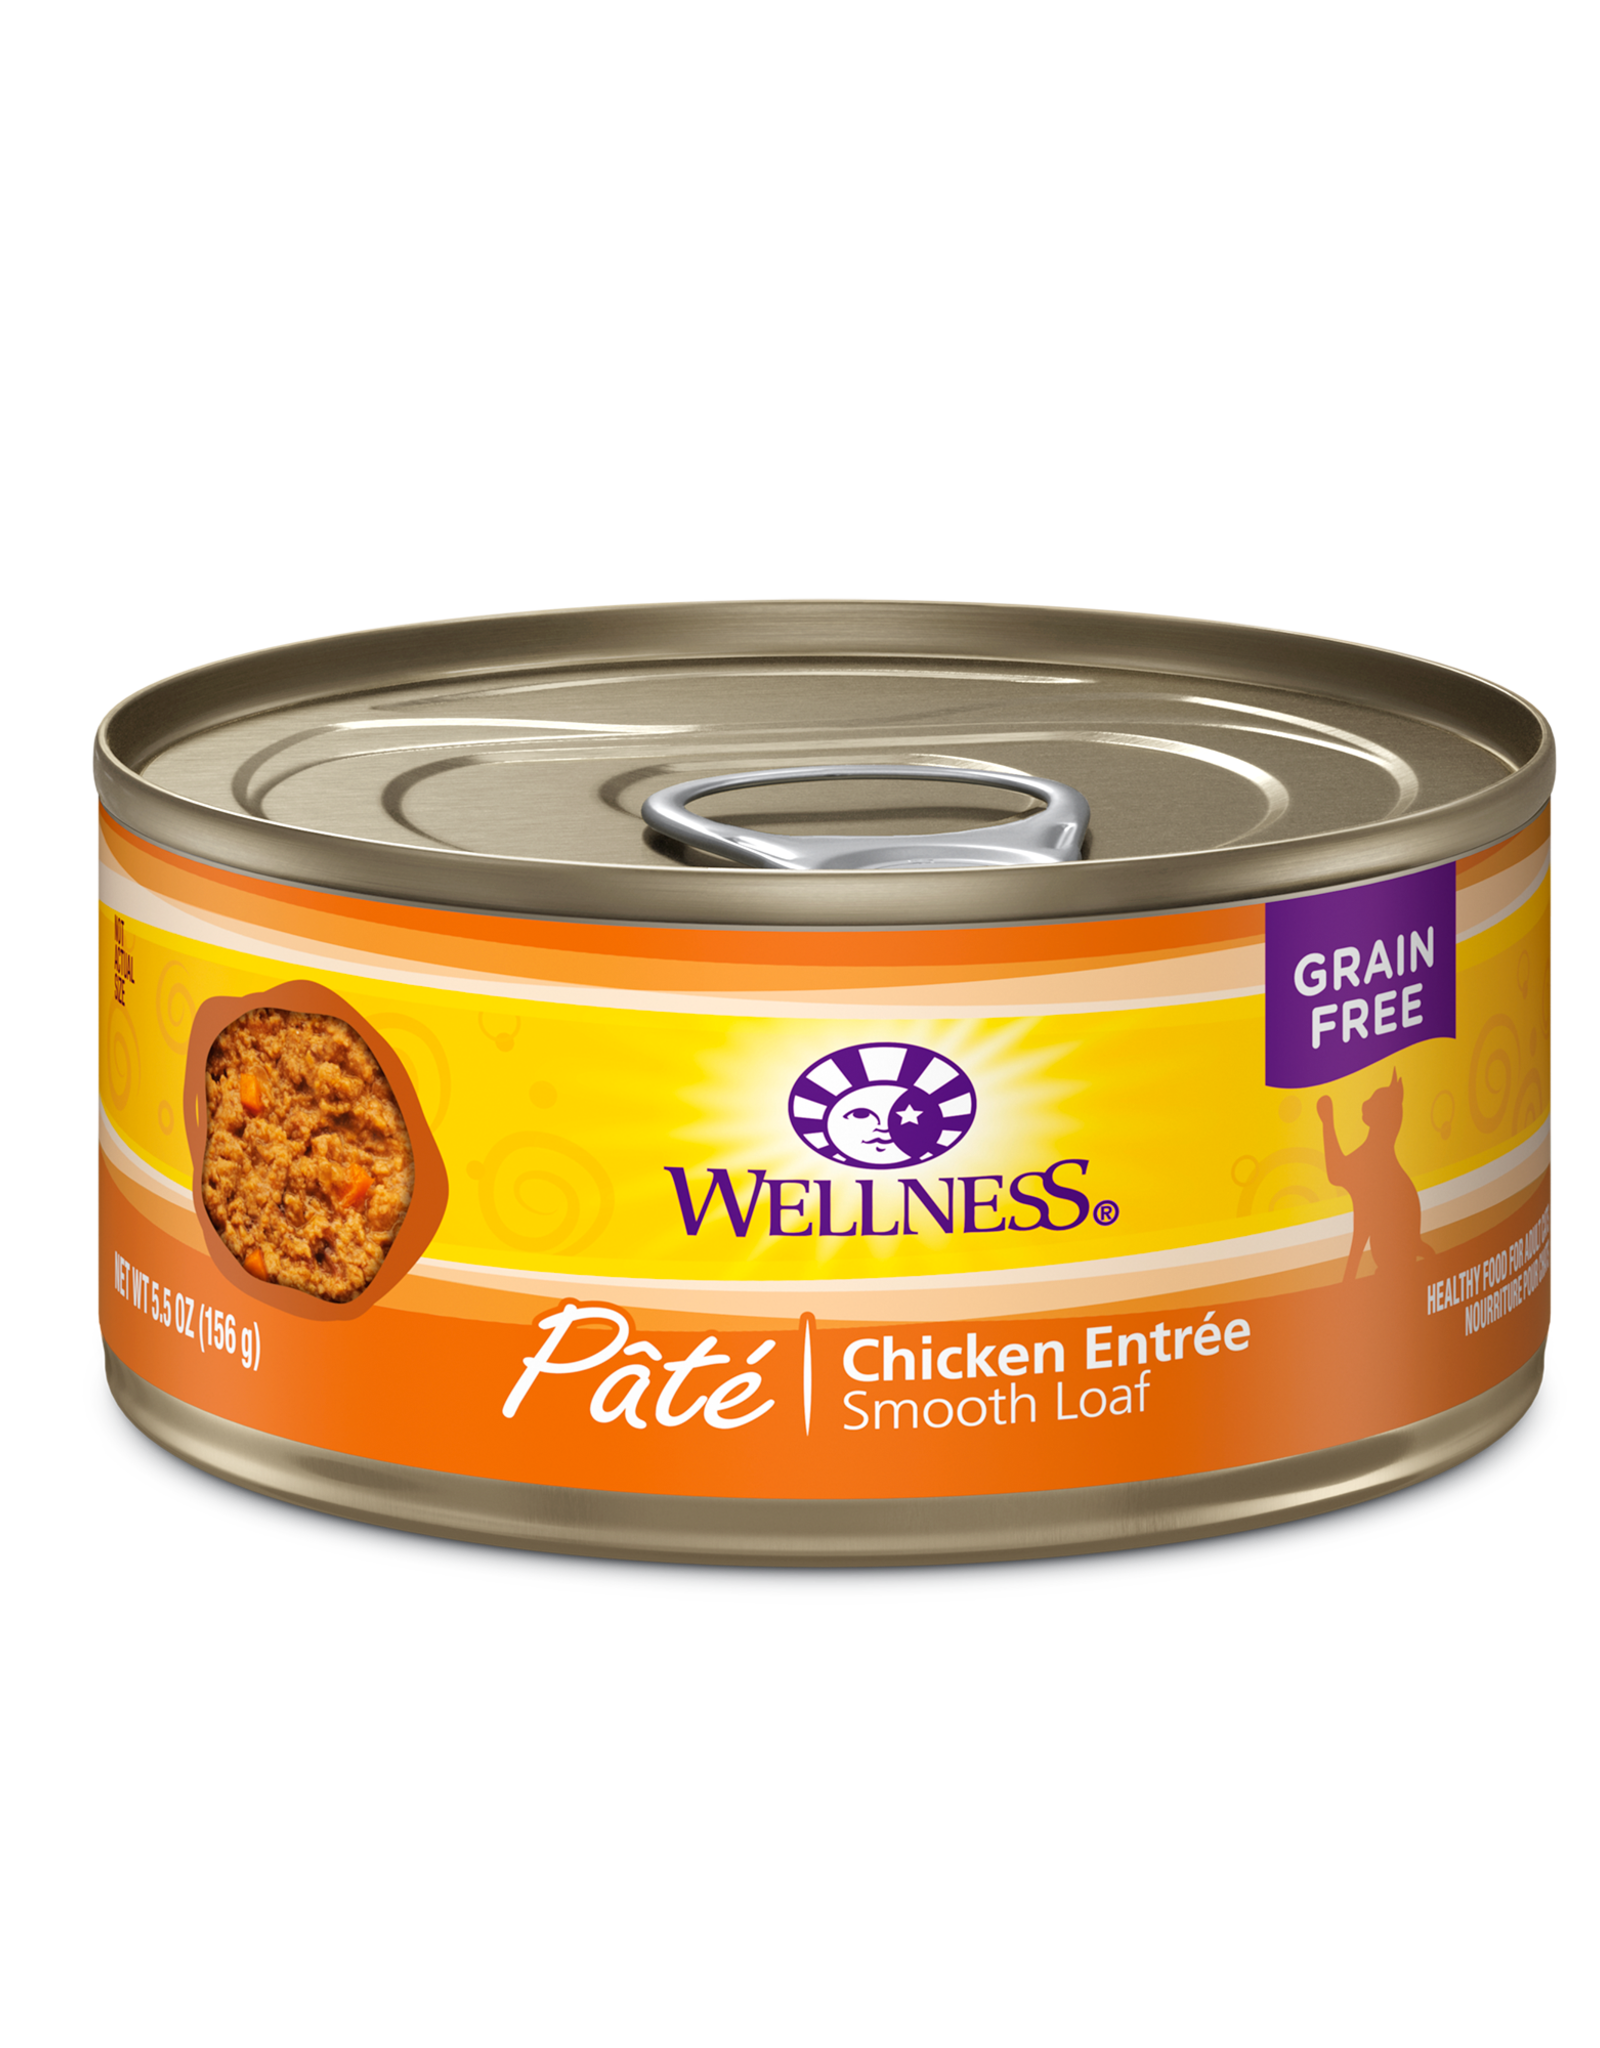 Wellness Wellness Canned Cat Food - Chicken